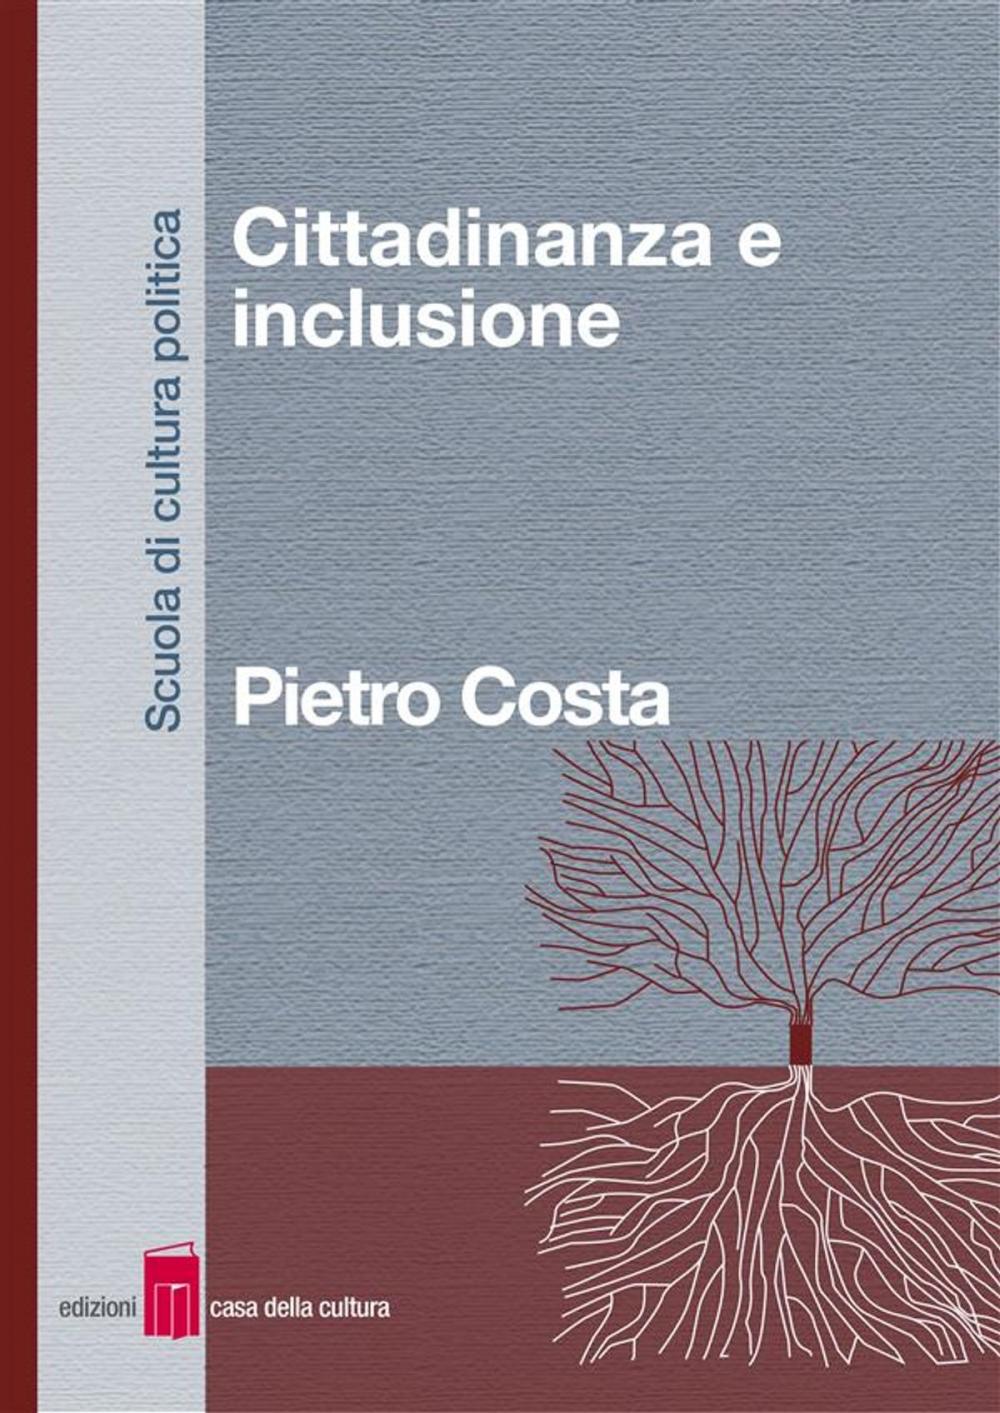 Big bigCover of Cittadinanza e inclusione